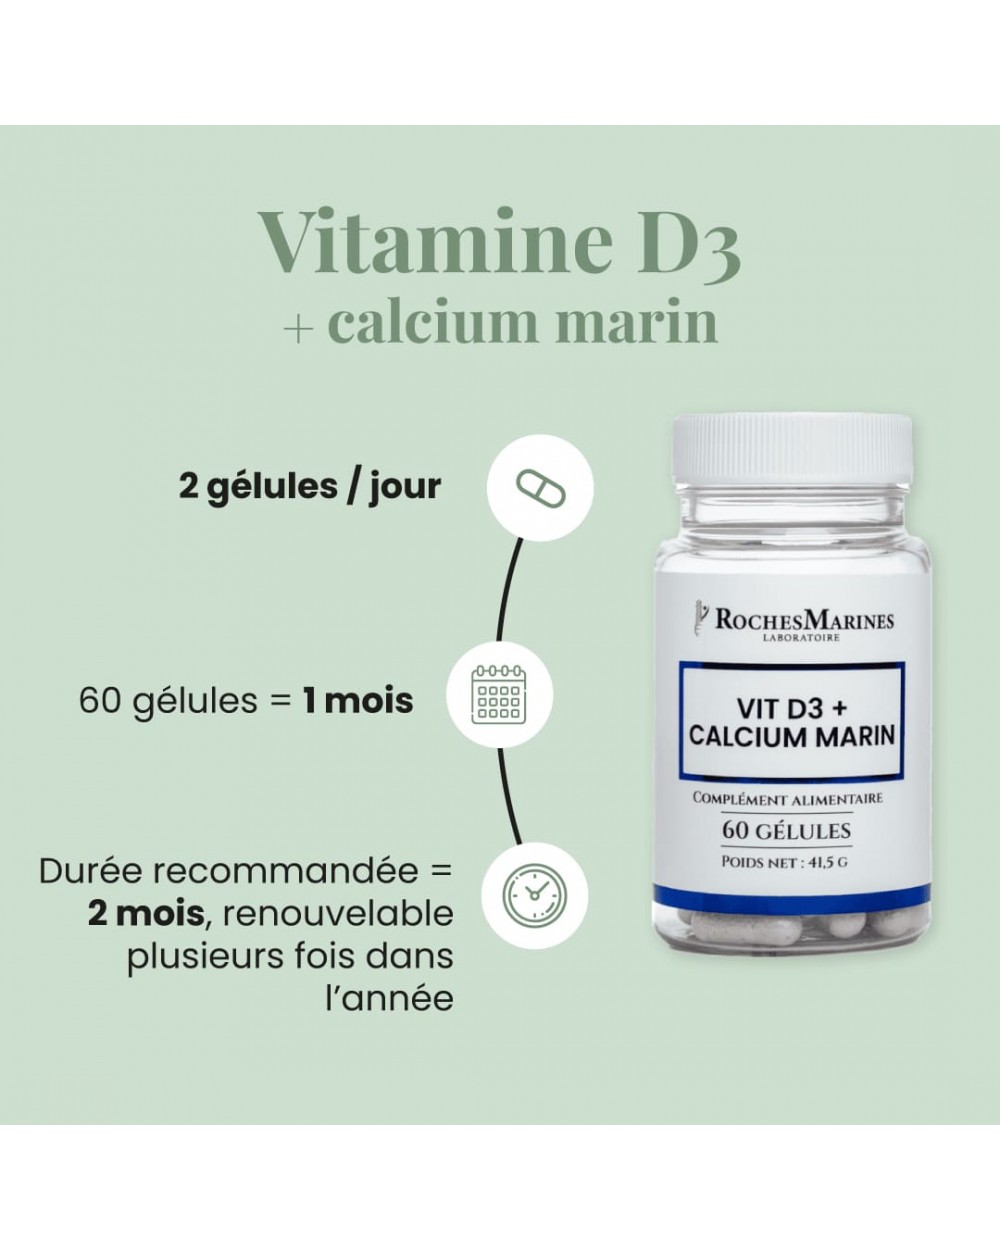 Complément alimentaire Vitamine D3 + Calcium Marin